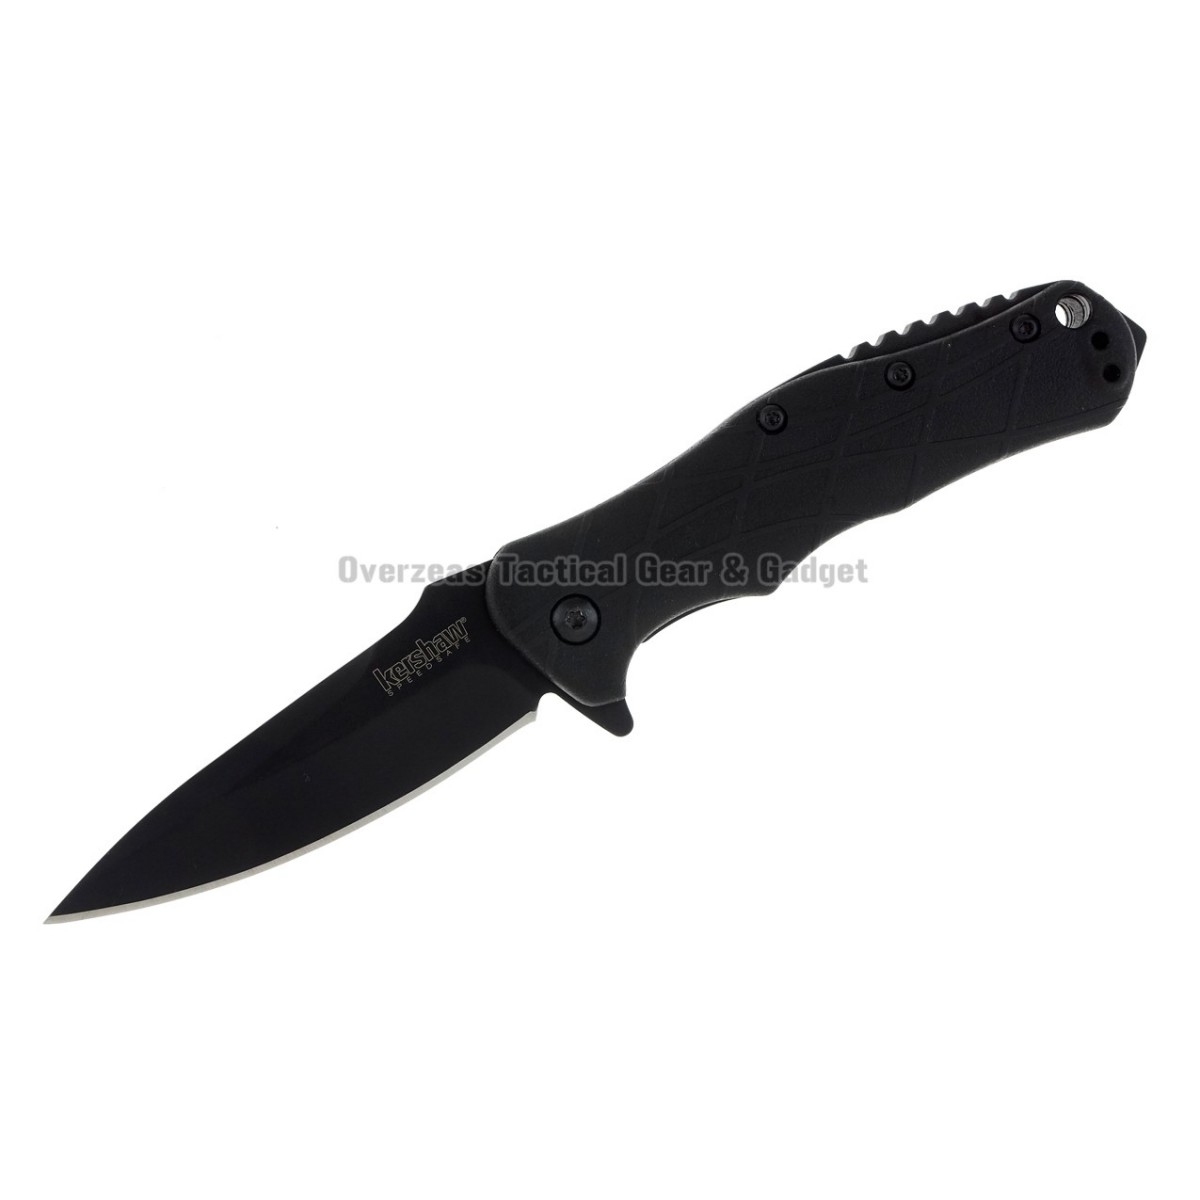 มีดพับ Kershaw RJ Tactical 3.0 Assisted Opening Knife (2.875" Black) 1987